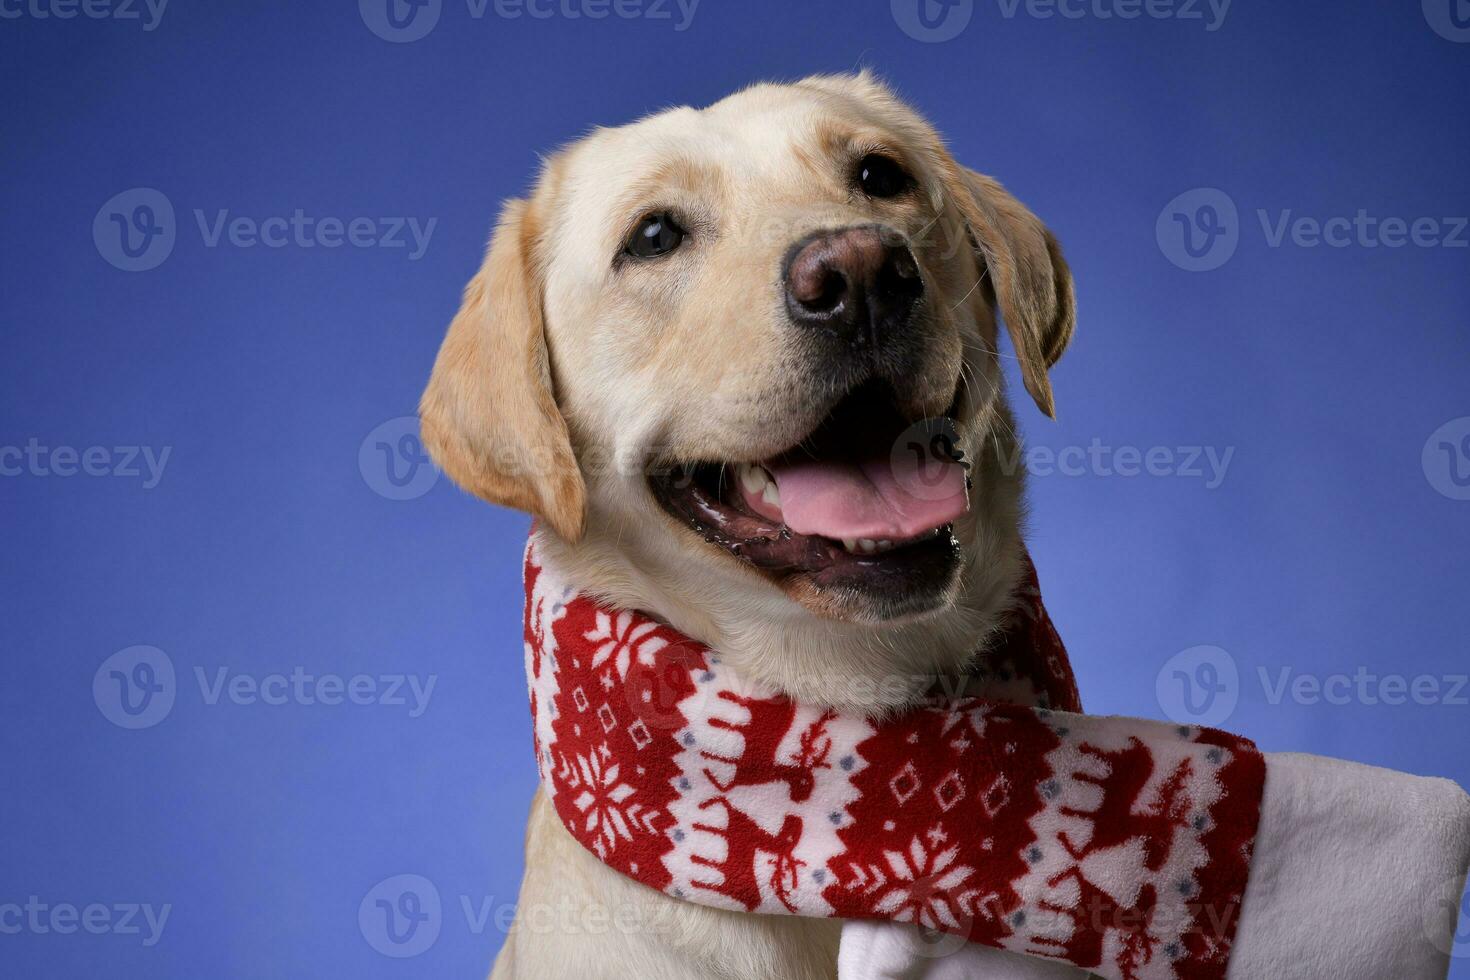 An adorable Golden retriever wearing Christmas scarf photo